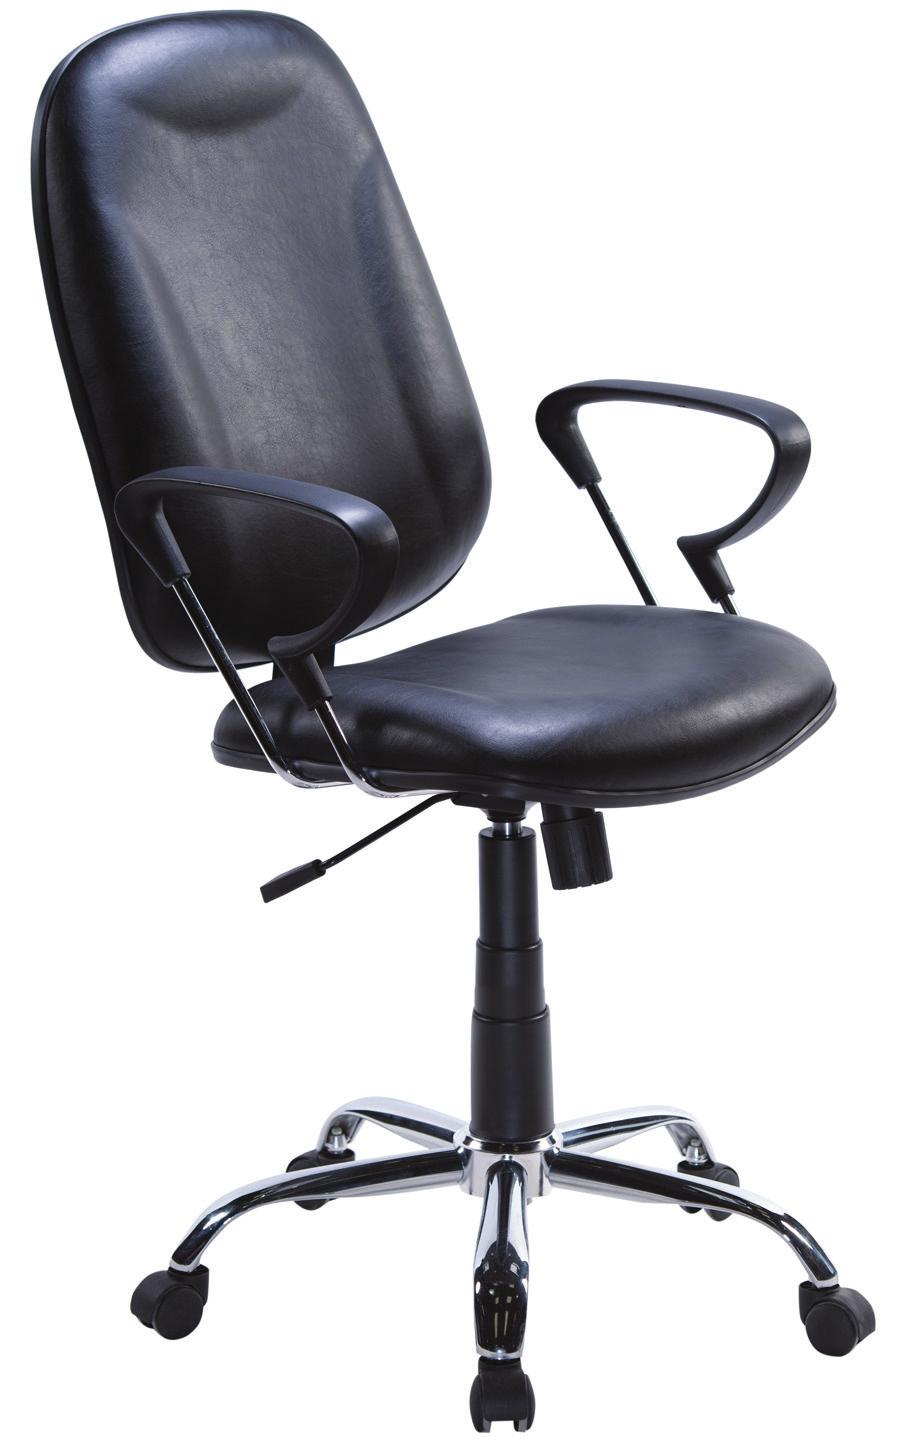 PARATY Cadeira Presidente base giratória estrela nylon 320mm ou cromada, pistão classe 3, braços